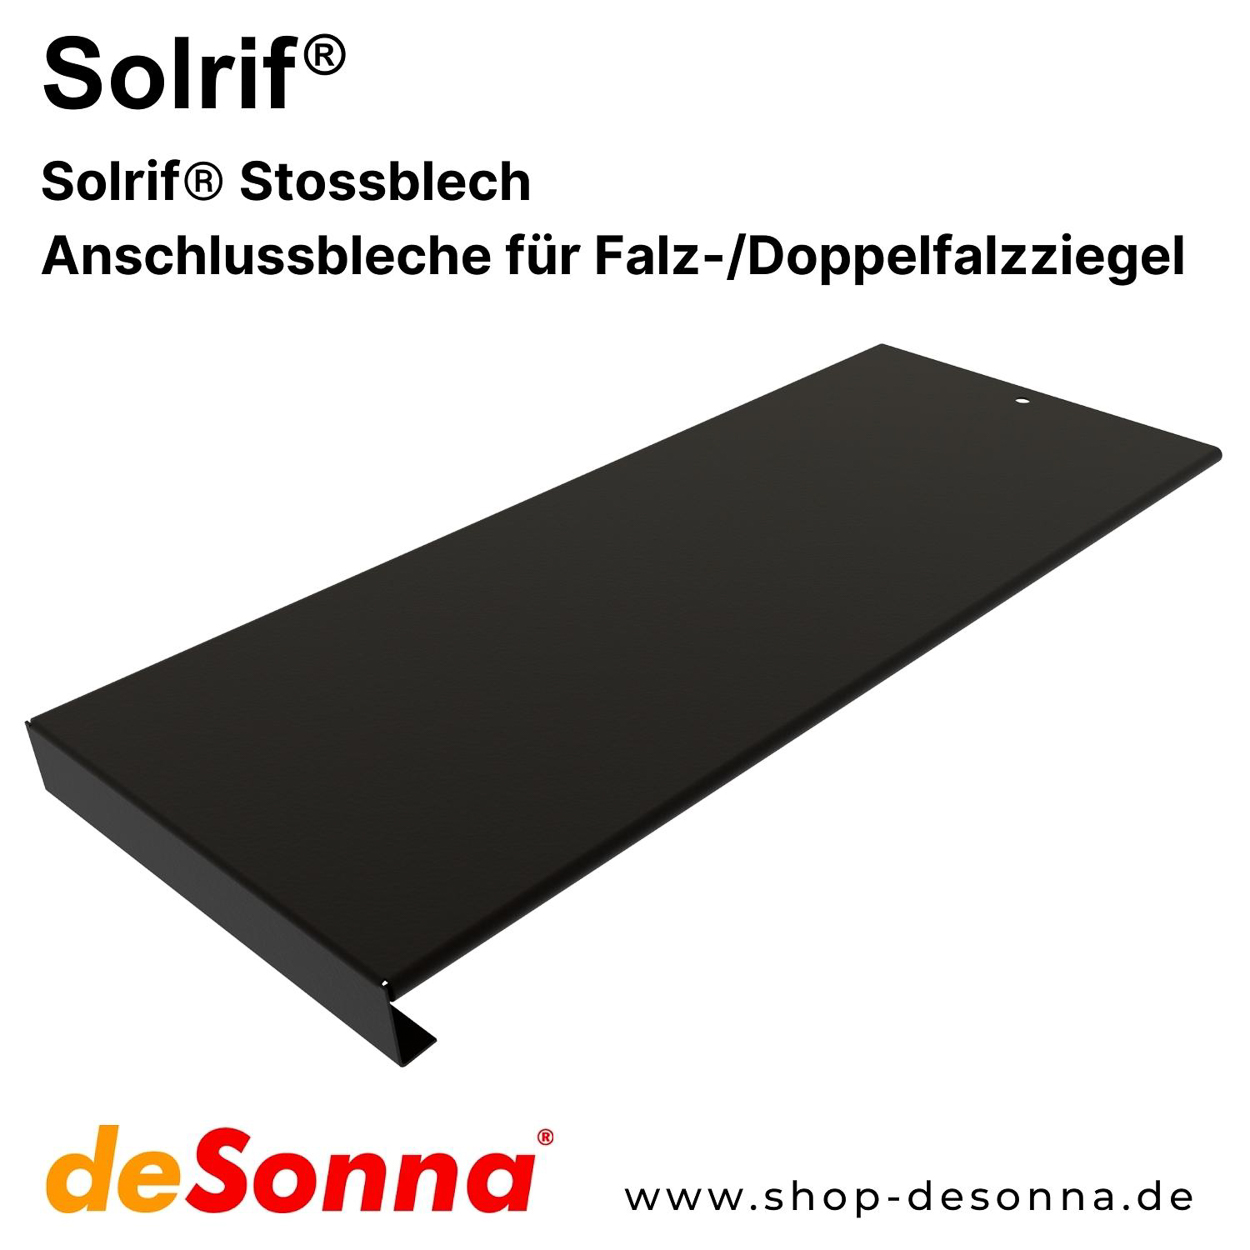 Solrif® Stossblech - Anschlussbleche für Falz-/Doppelfalzziegel